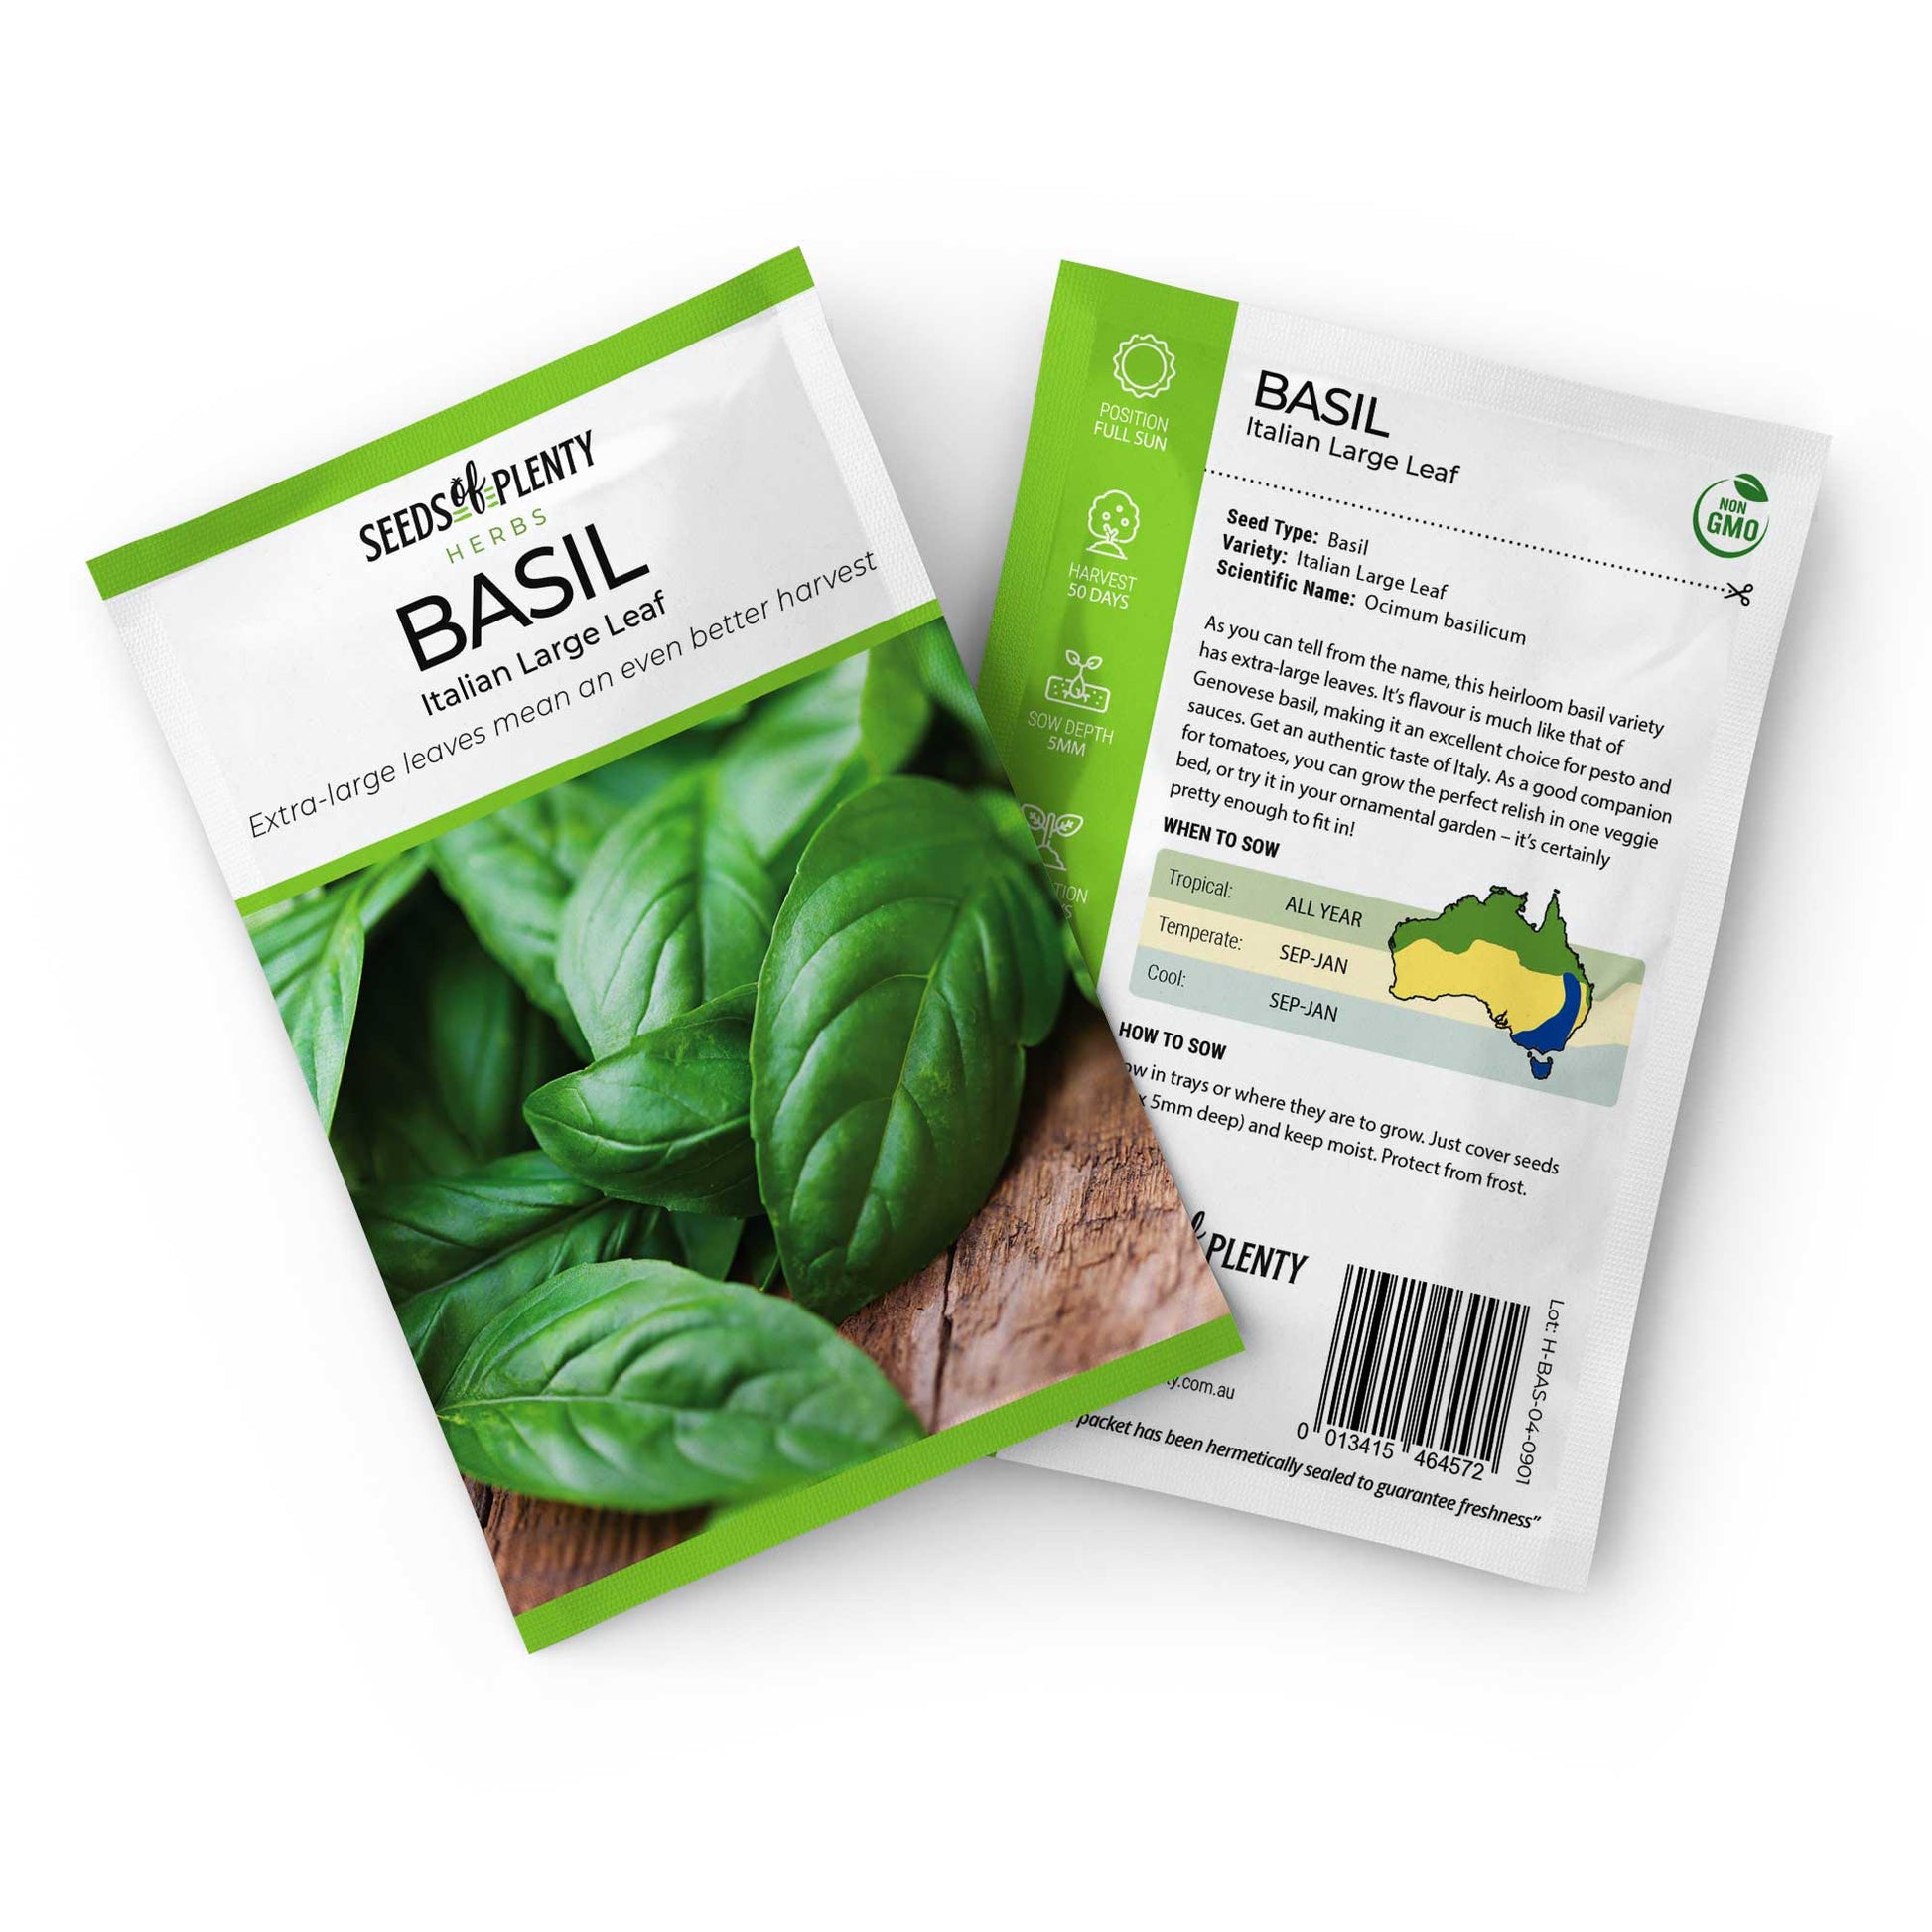 BASIL - Italian Large Leaf Default Title